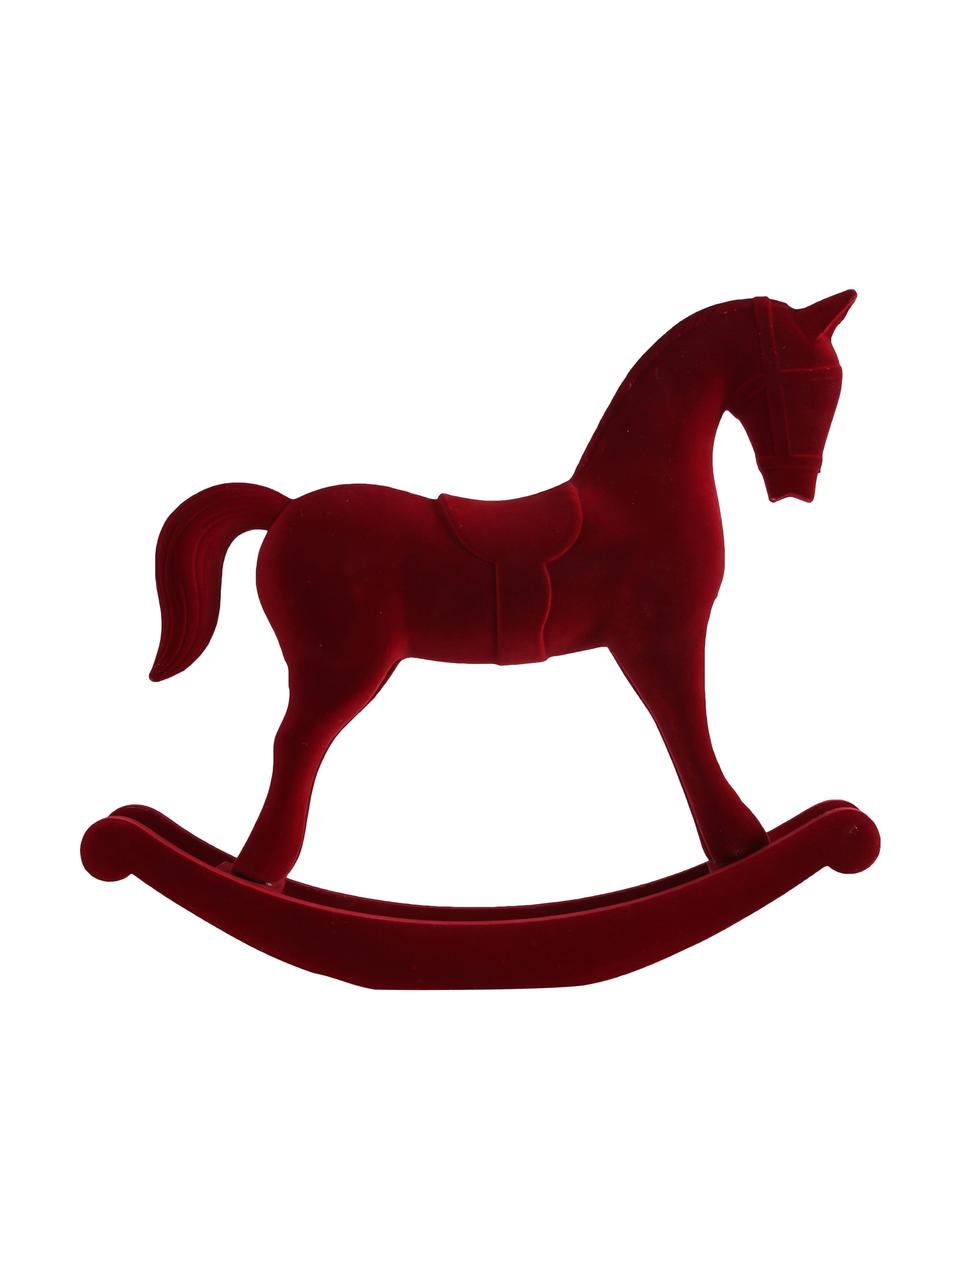 Samt-Deko-Objekt Rocking Horse, Bezug: Samt, Gestell: Mitteldichte Holzfaserpla, Rot, 38 x 31 cm